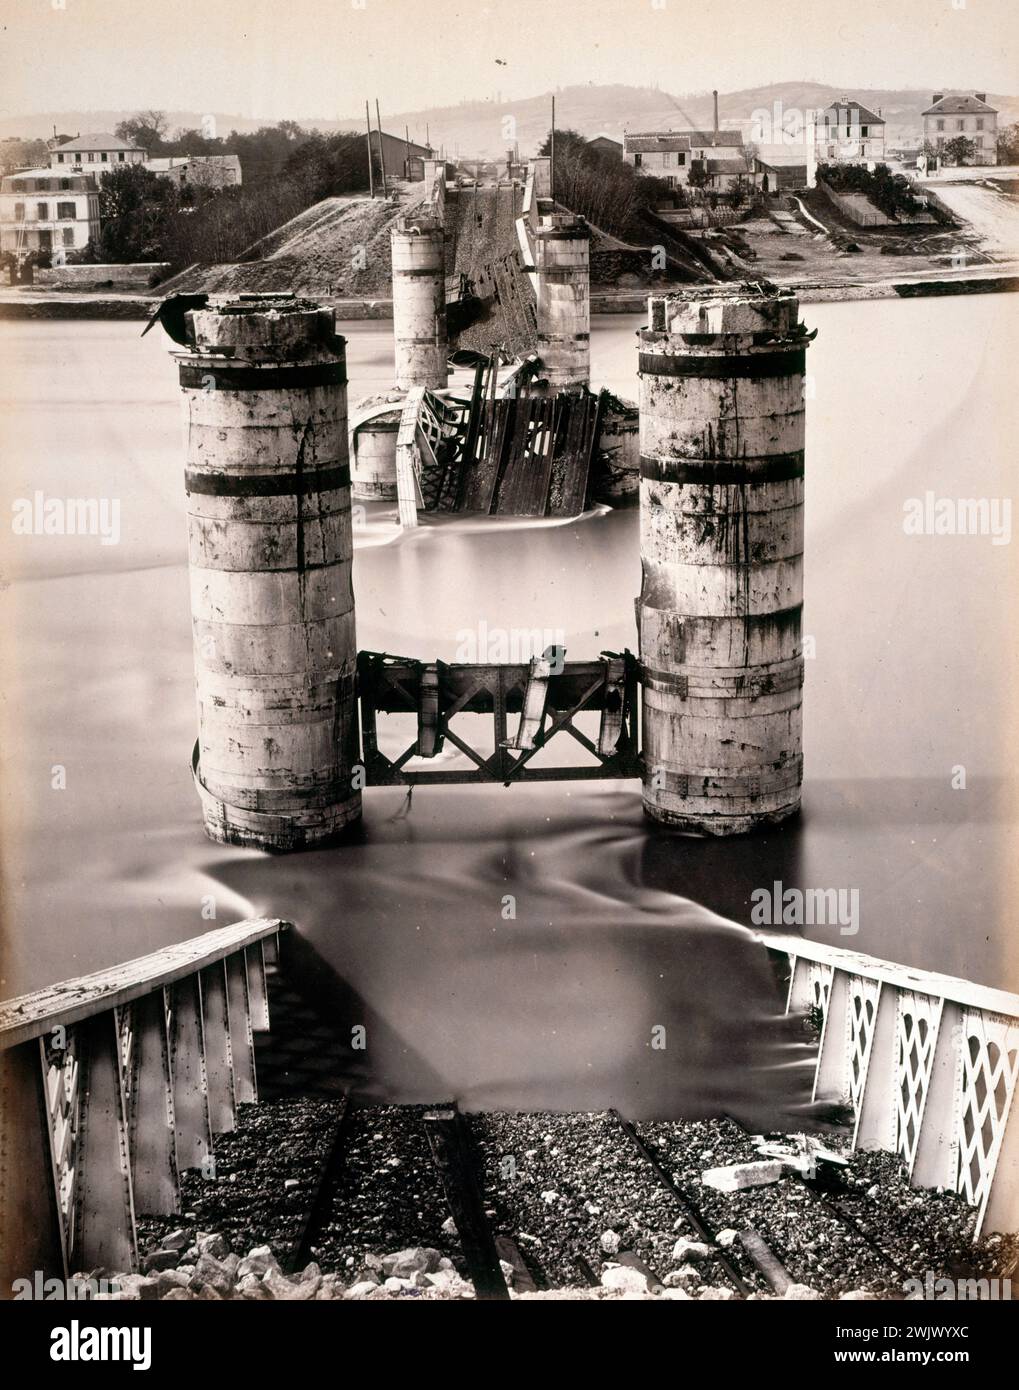 J. Andrieu. 'War disasters: the Argenteuil bridge'. Paris, Carnavalet museum. 36326-9 1940), Argenteuil, commune la (March-May 1871), third republic (1870, XIX th century, destruction, bridge Stock Photo